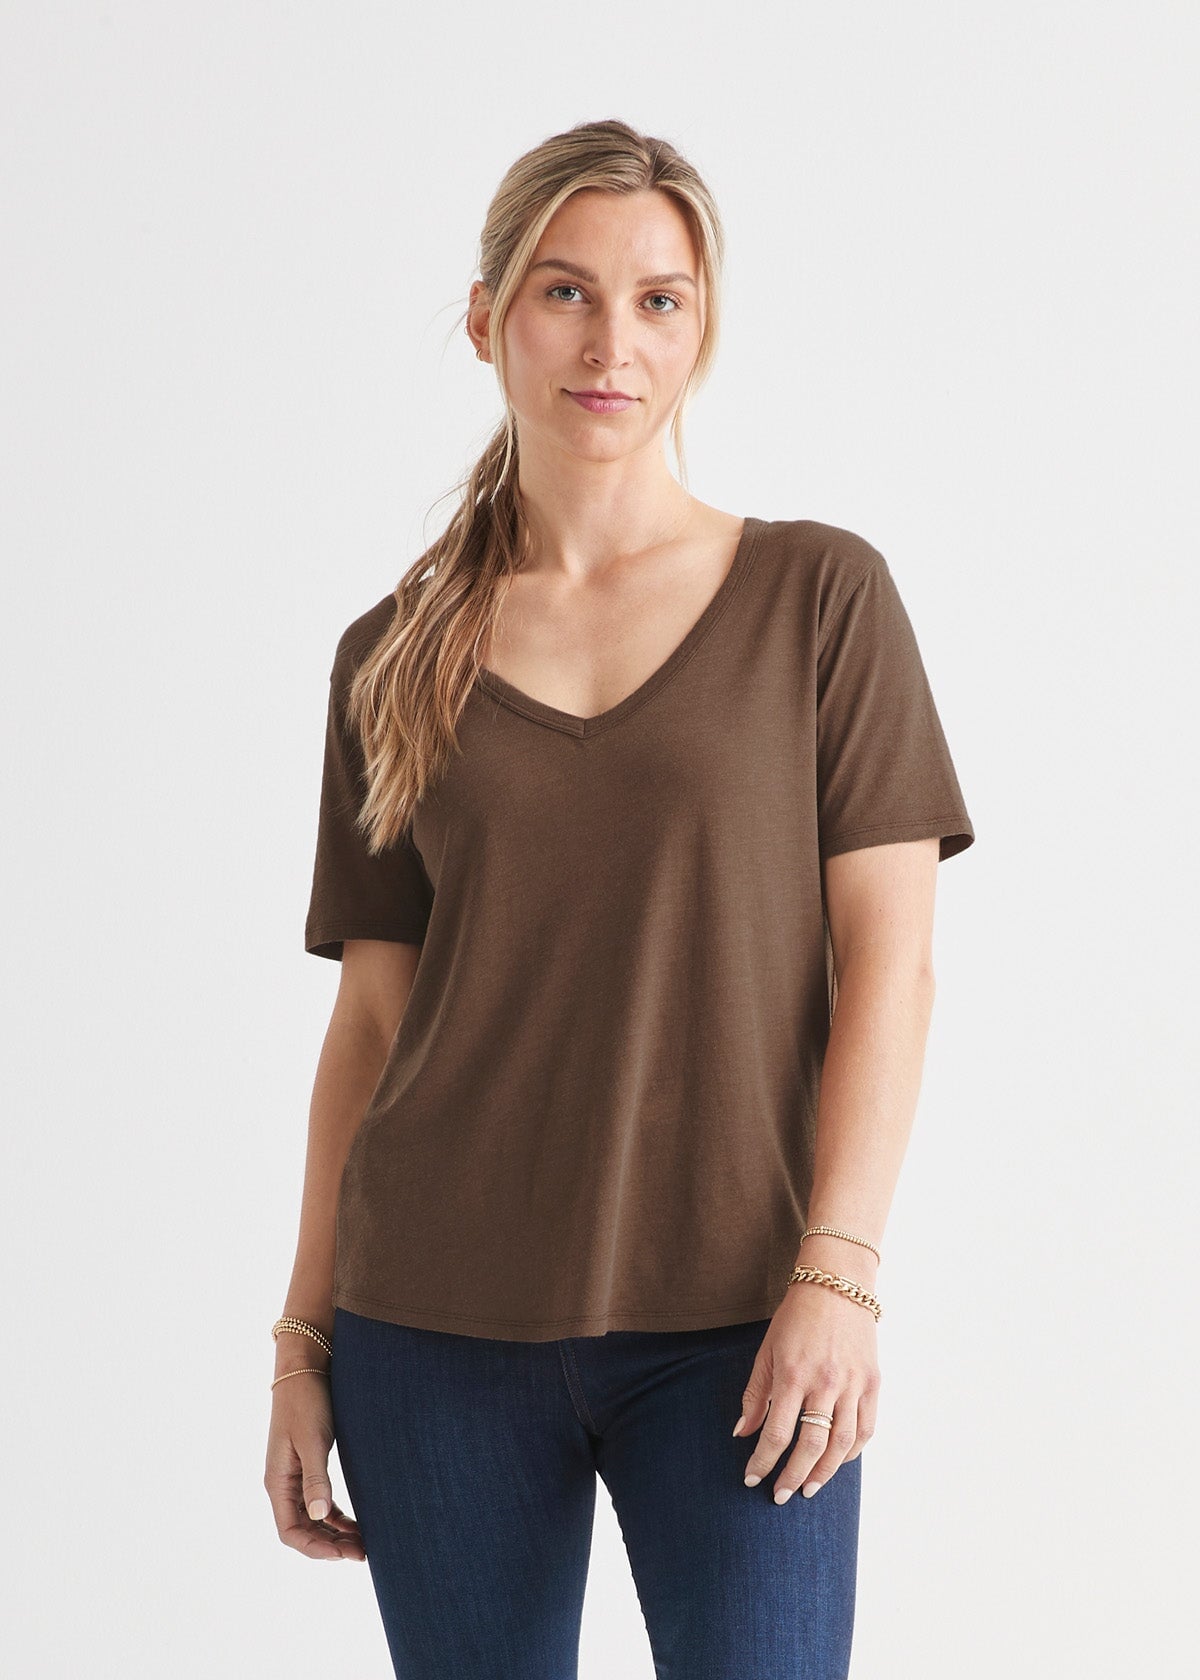 womens soft lightweight brown v-neck t-shirt front